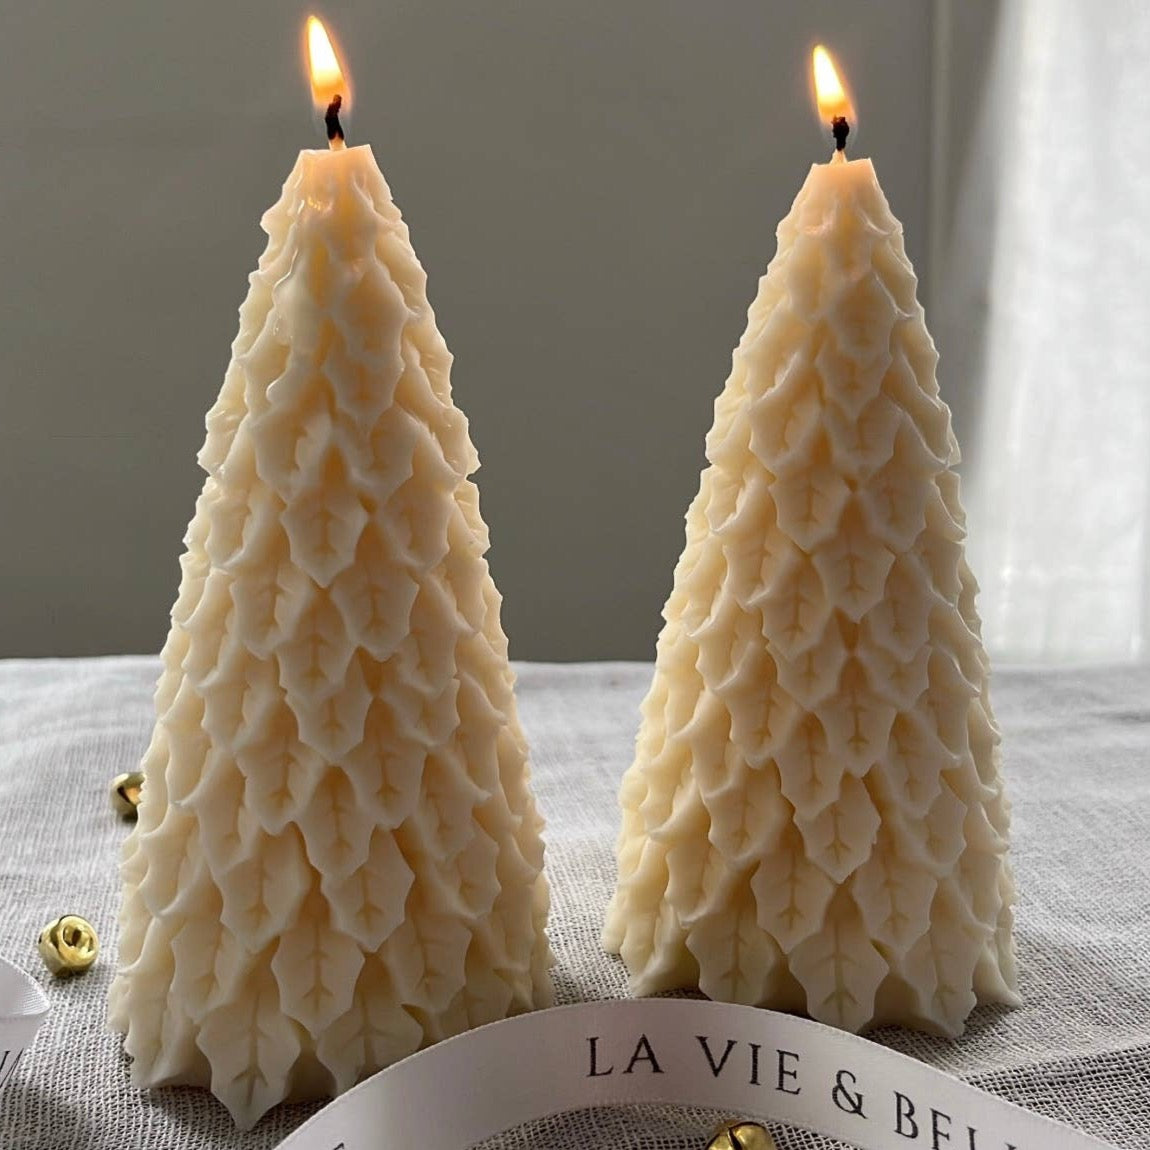 Christmas Tree Candle: Citrus by La vie & Belle